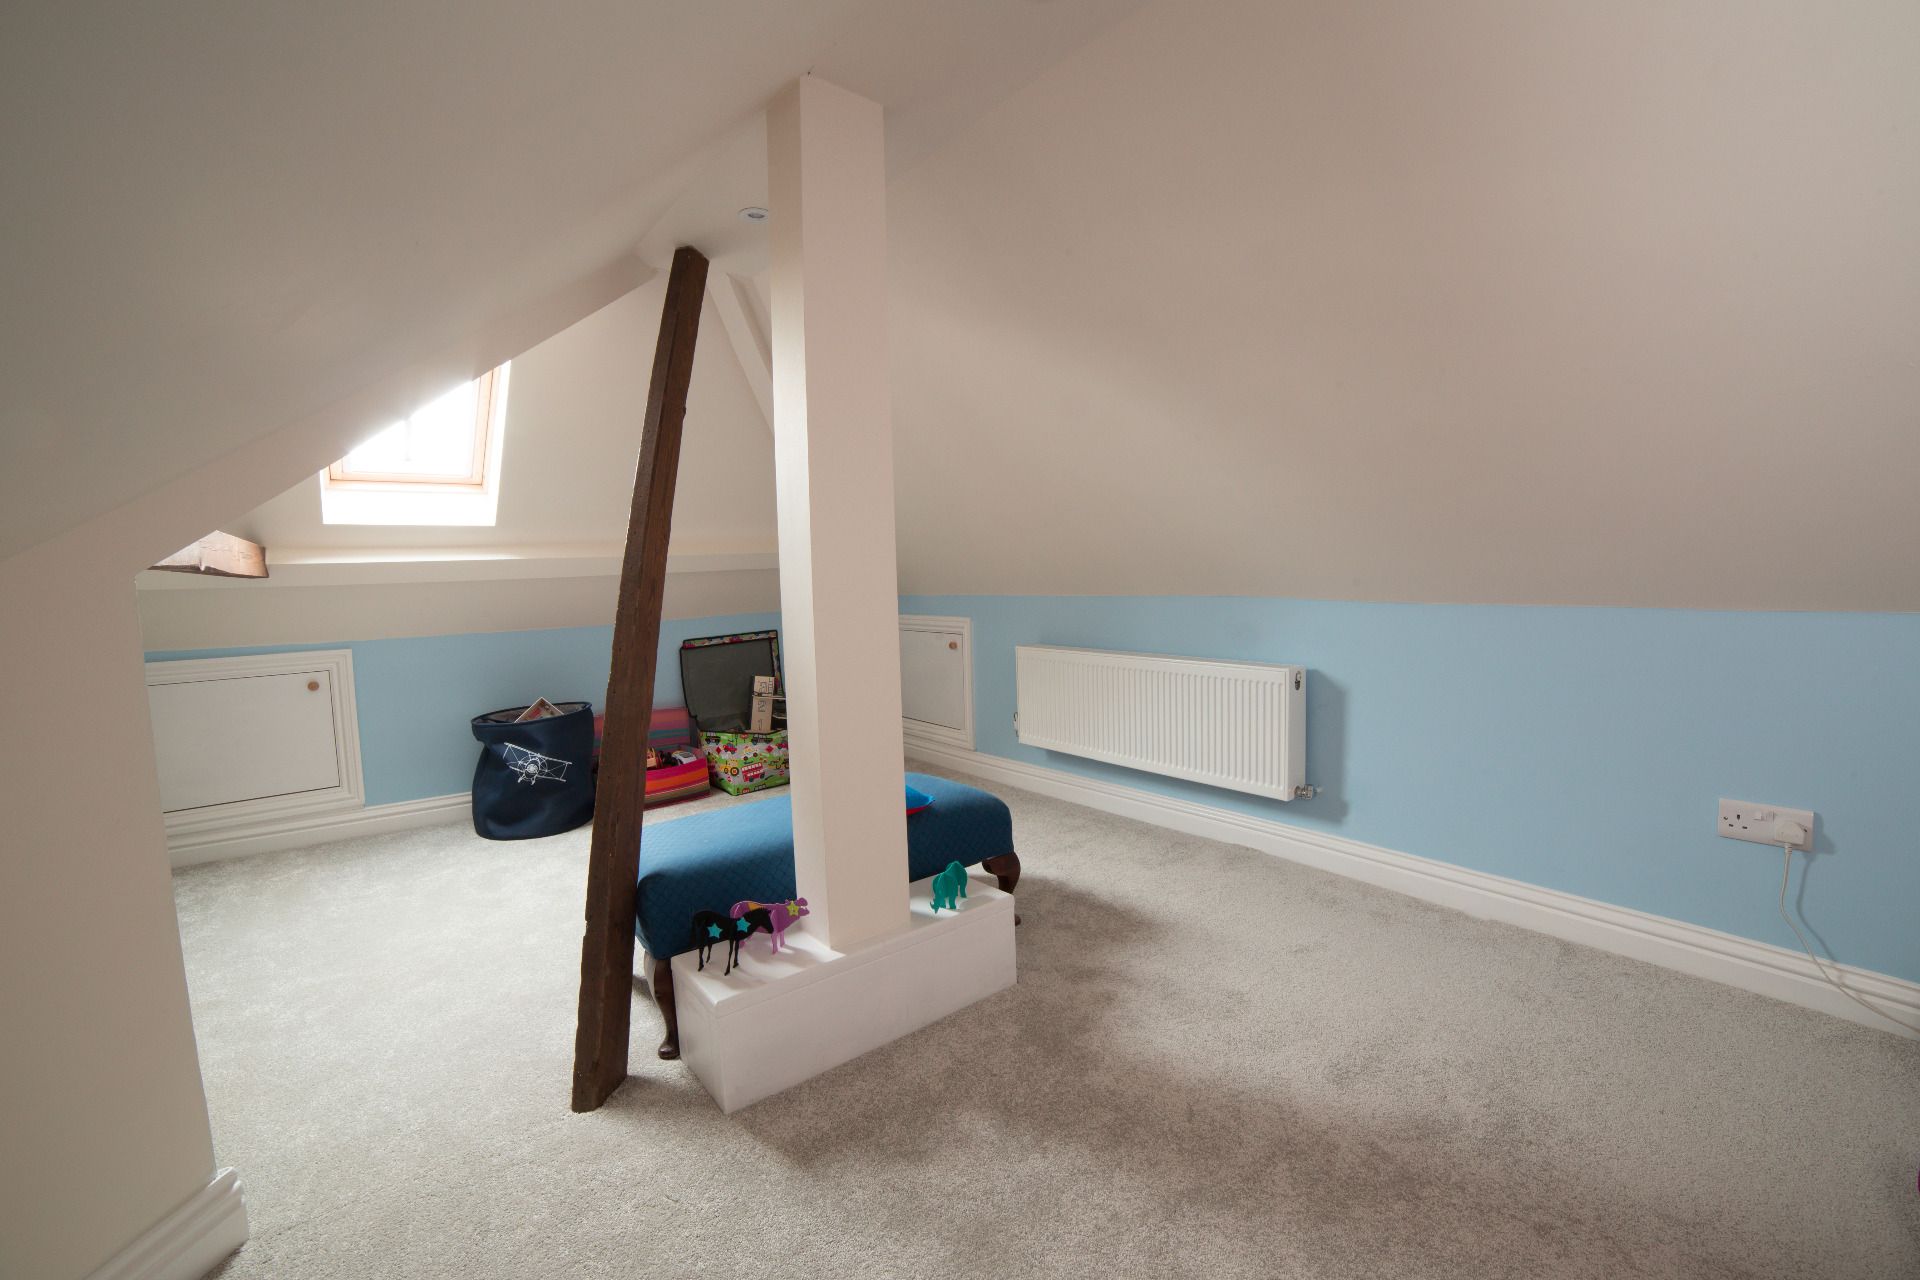 Rear dormer loft conversion playroom